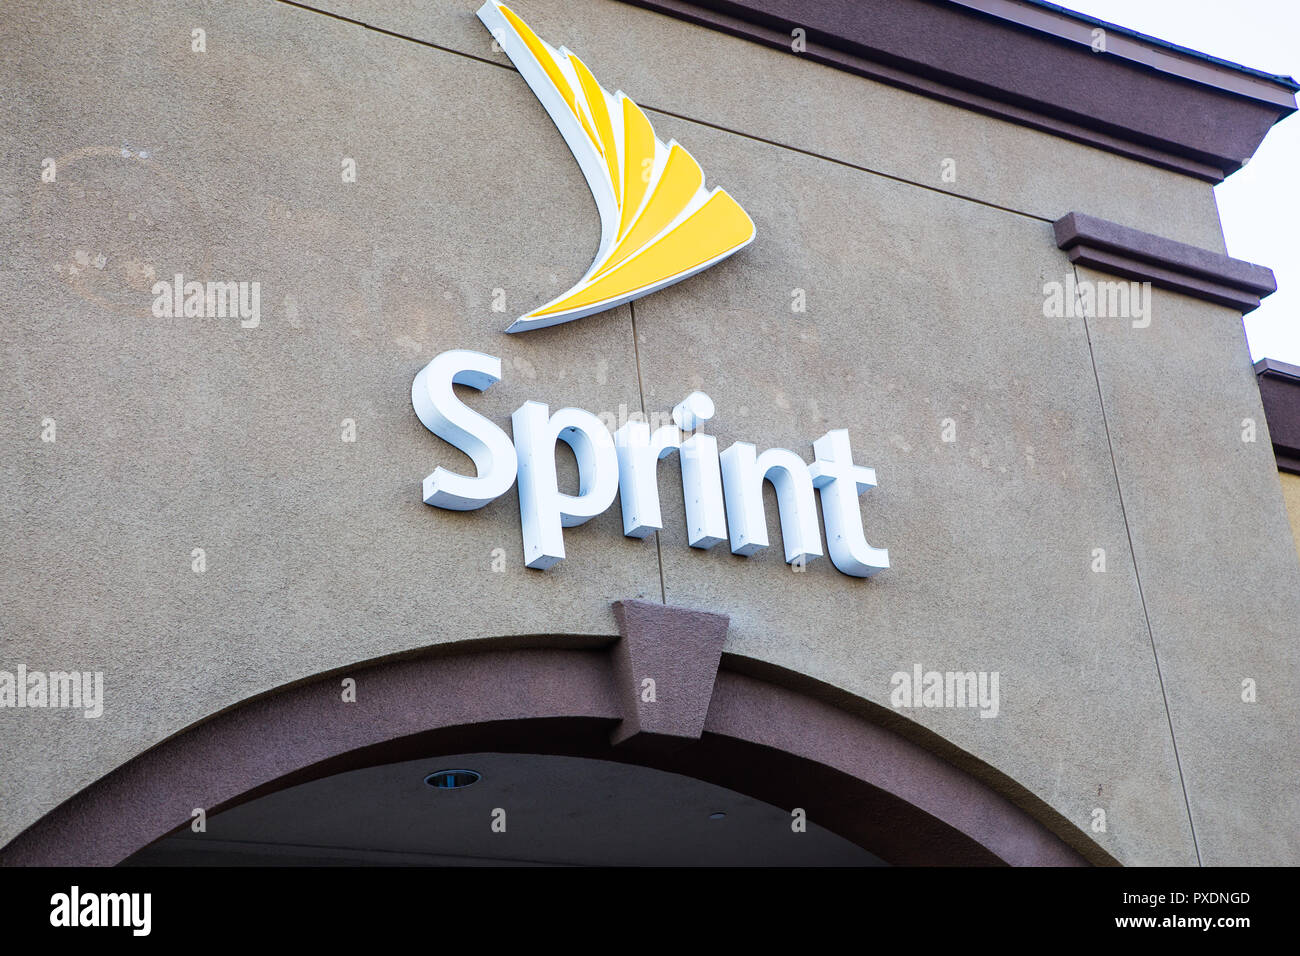 Amerikanische Telekommunikationsunternehmen Sprint store Gebäude äußeres Zeichen und Logos Stockfoto